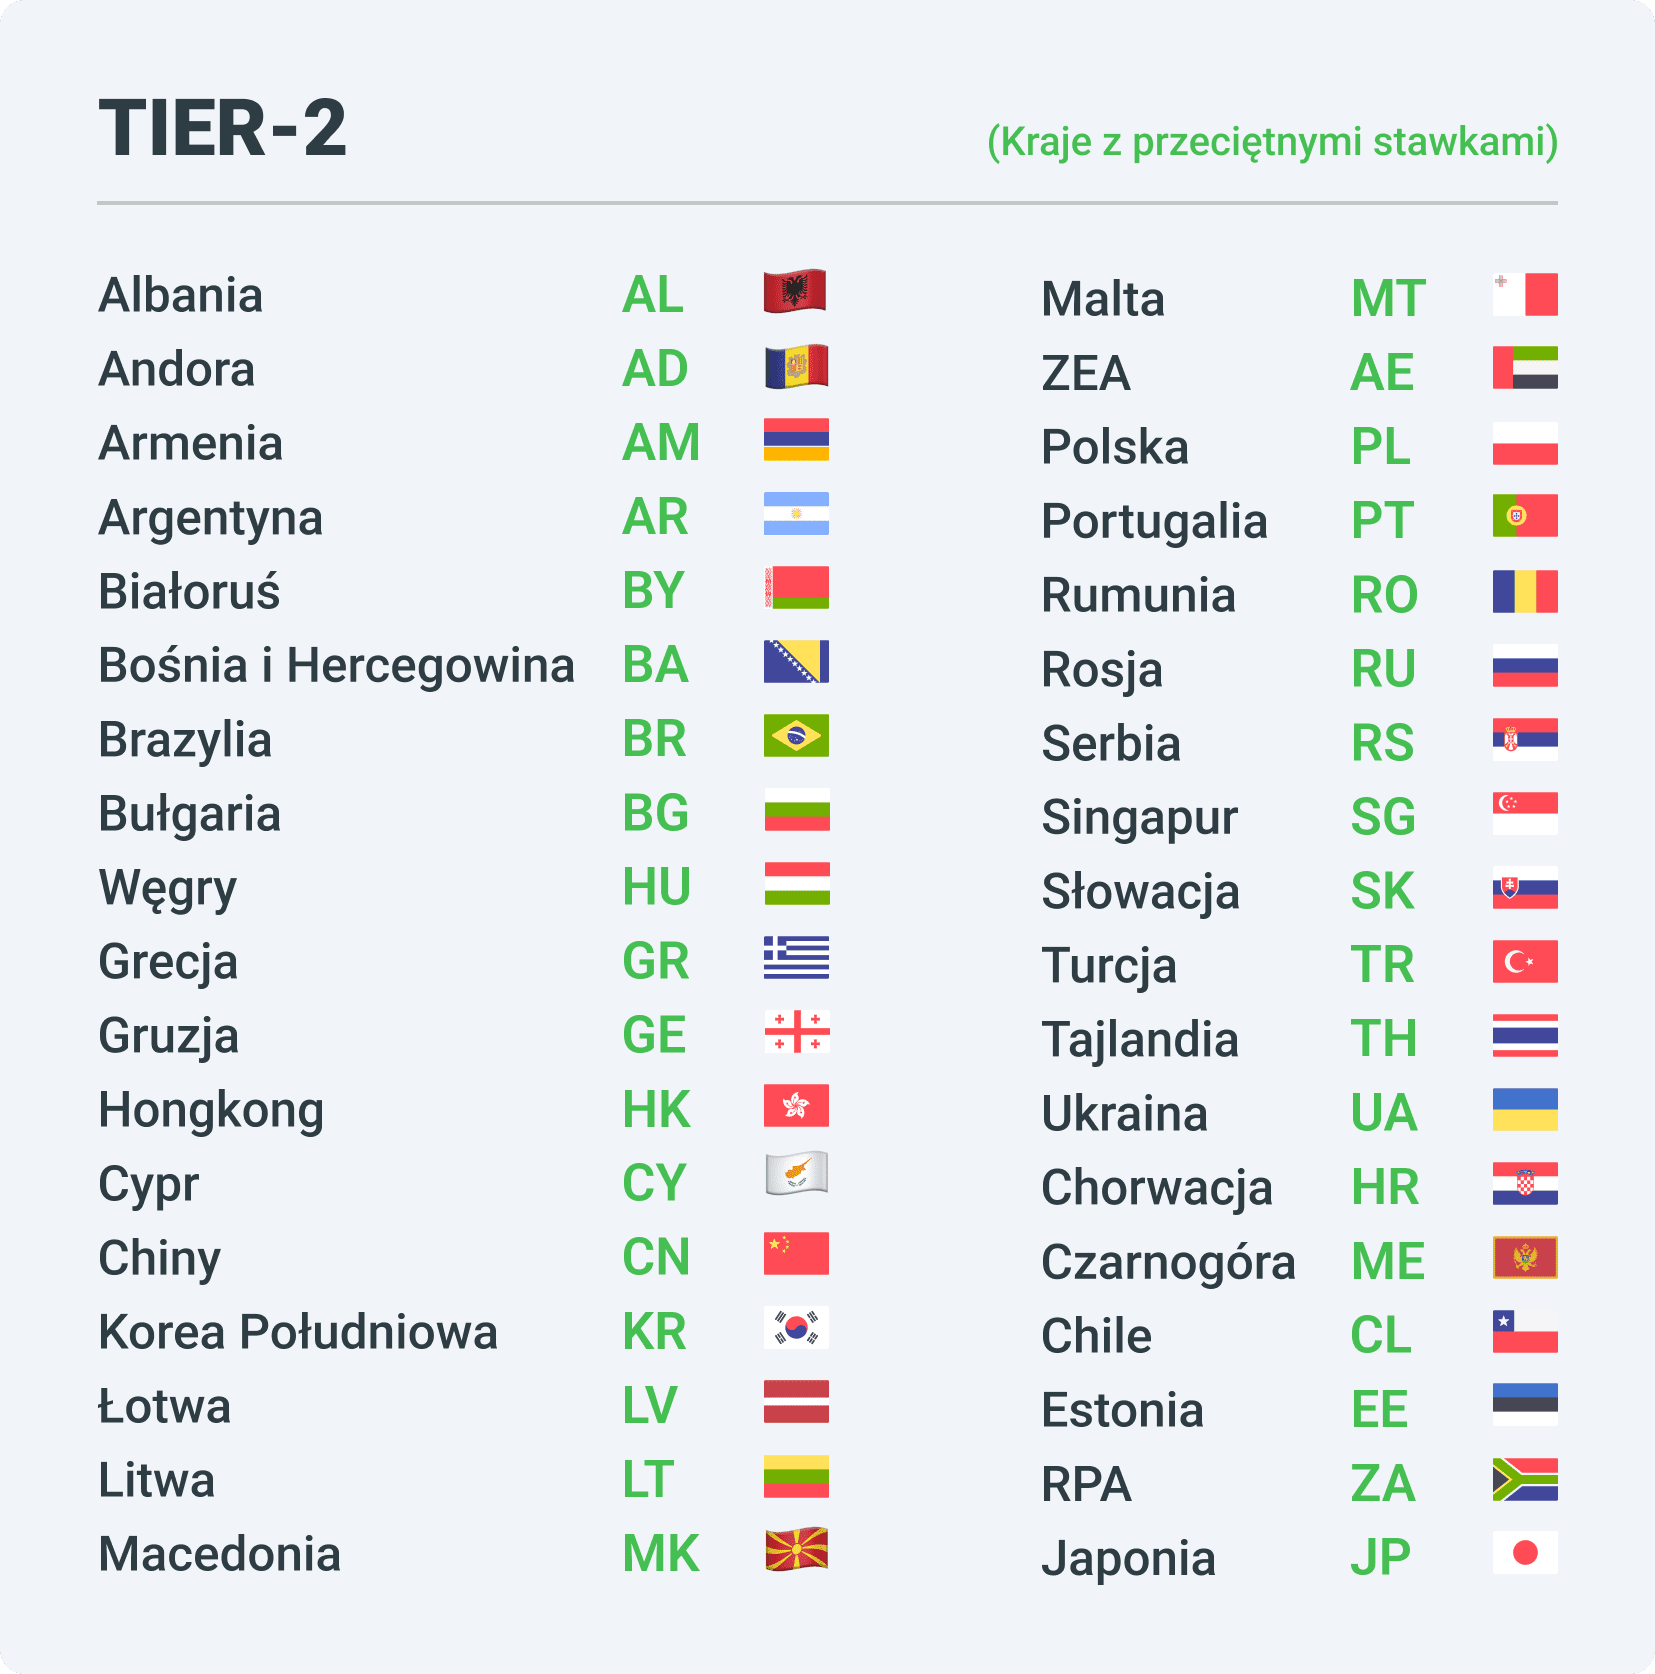 Kraje z przeciętnymi stawkami w afiliacji - Tier2